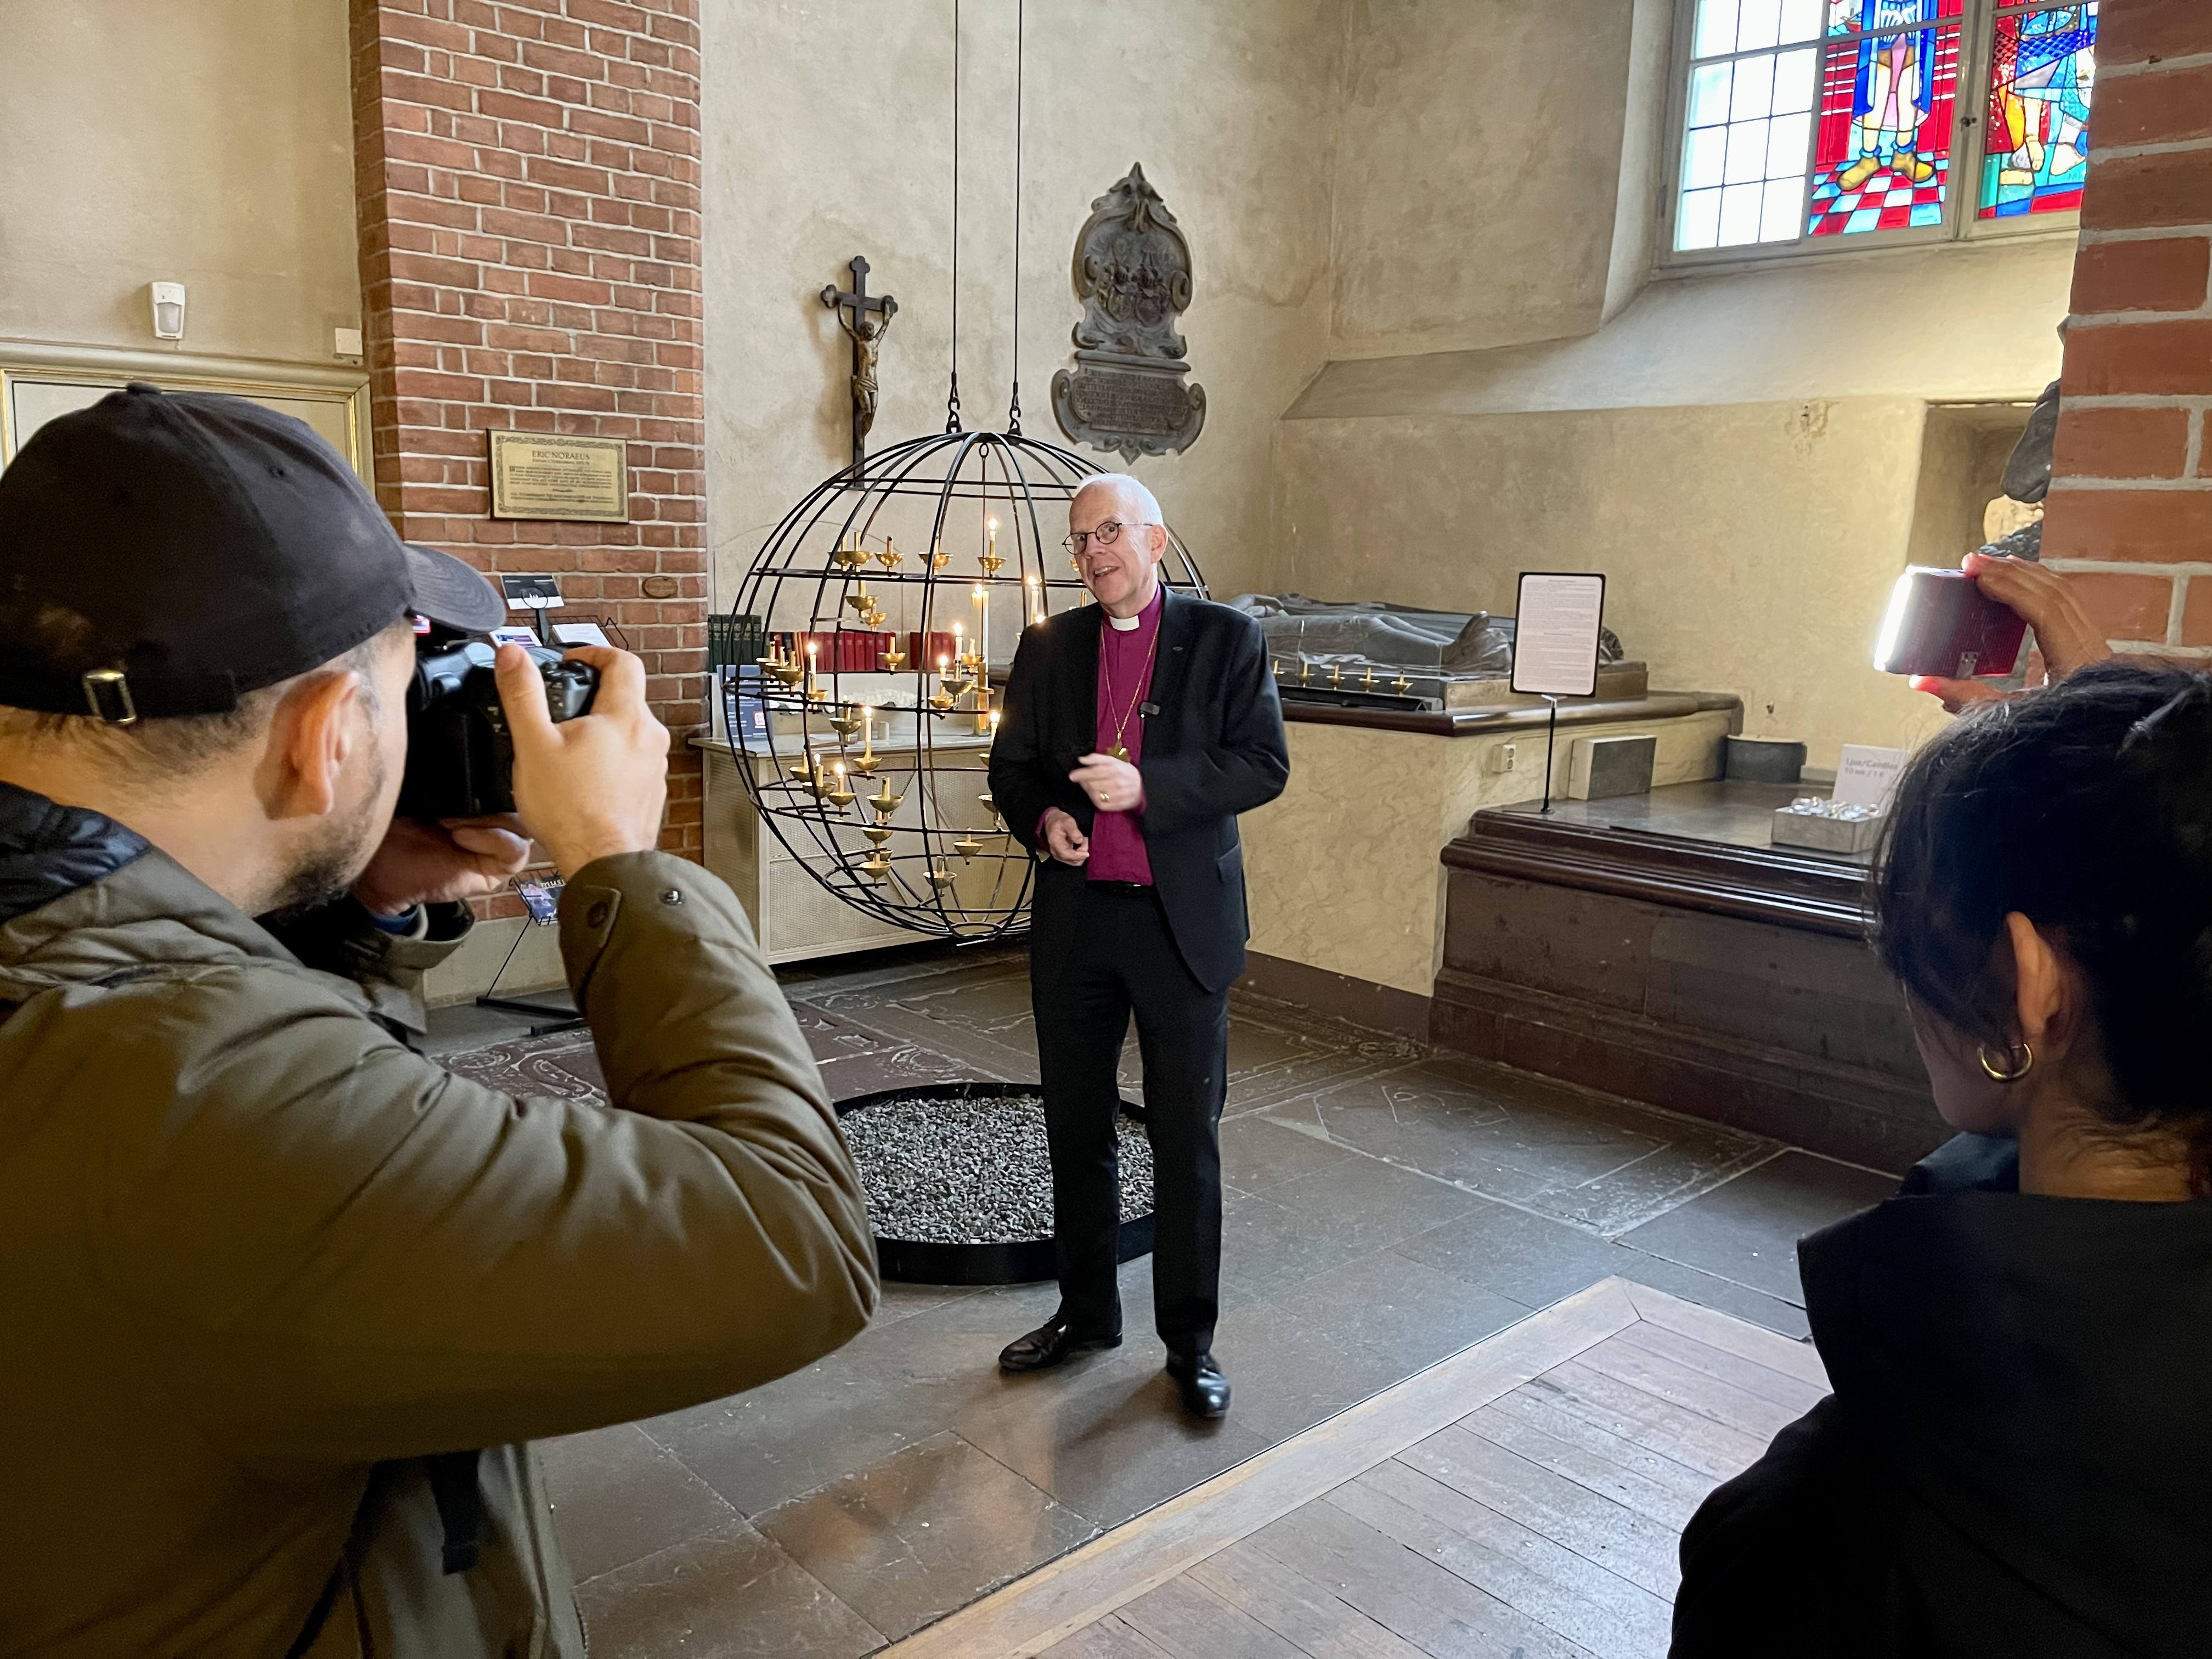 Ärkebiskop Martin Modéus står i en kyrka och blir fotograferad.